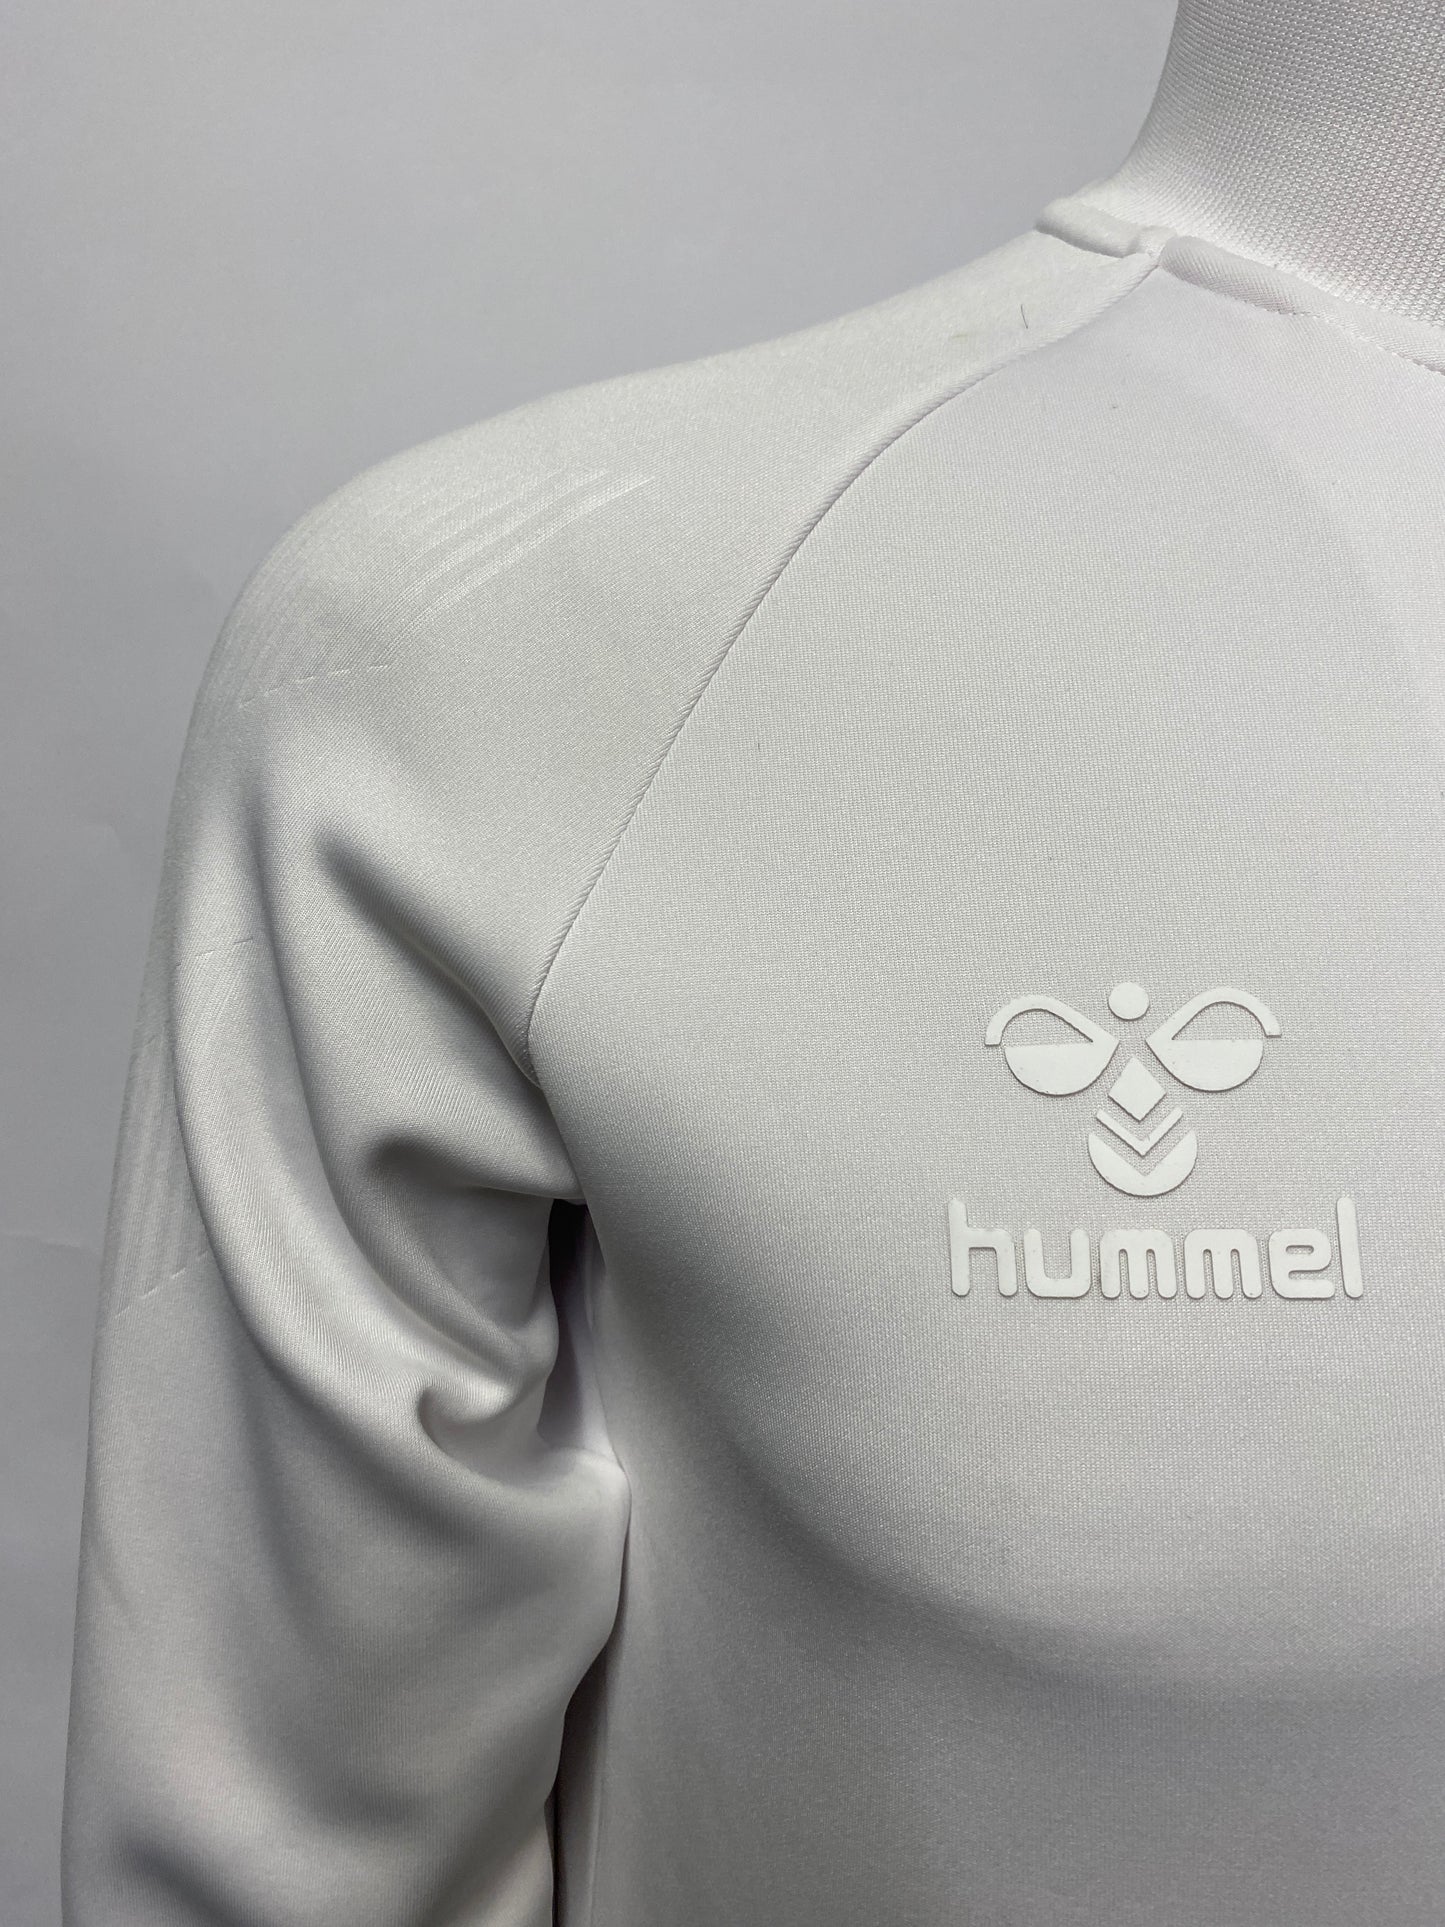 Hummel White Full Zip Sweater Medium